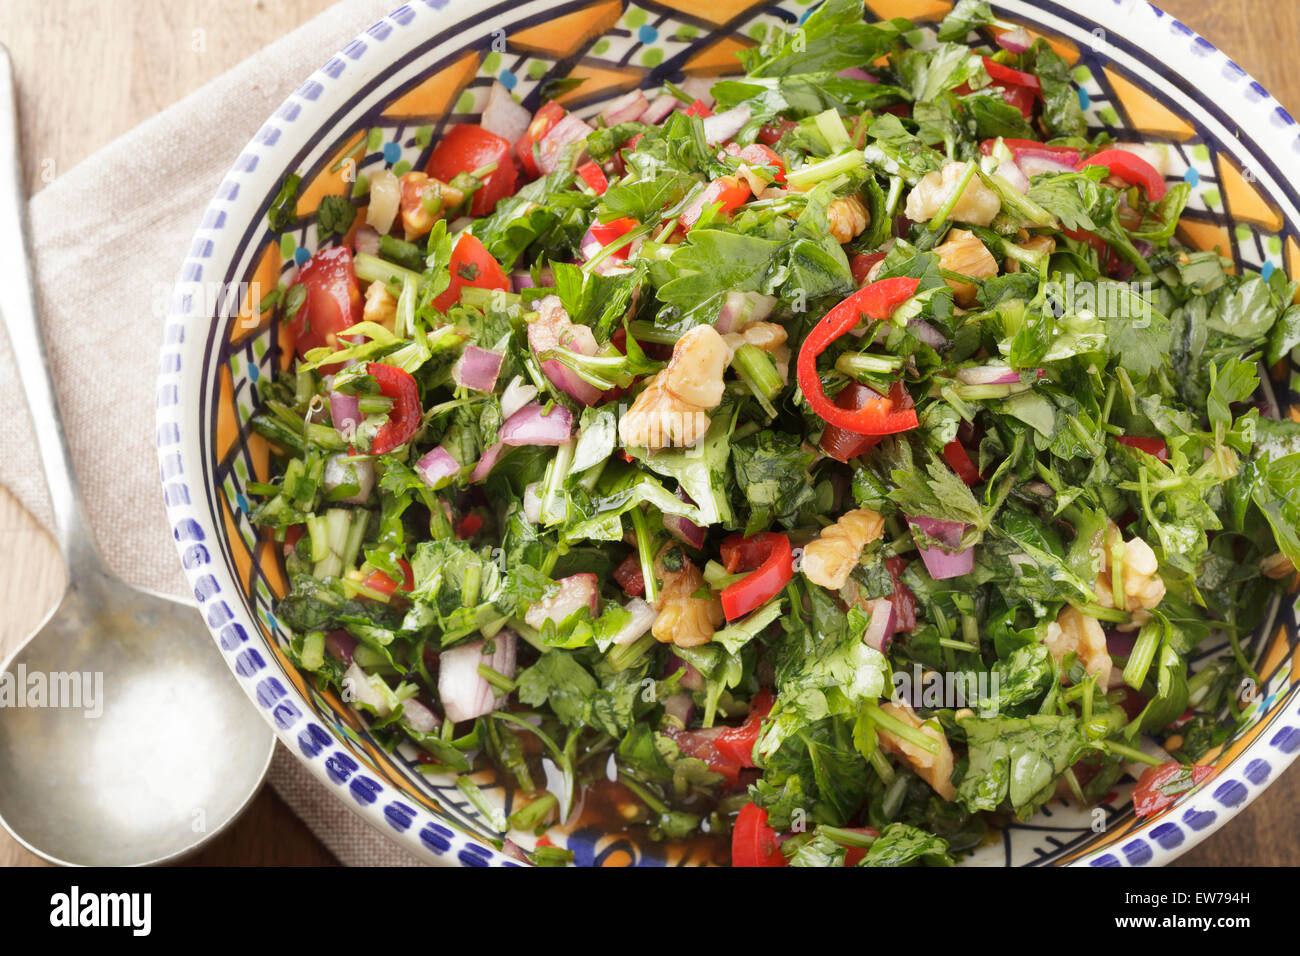 Salade marocaine de persil, piment, oignon rouge, tomate, noix et jus de grenade Banque D'Images